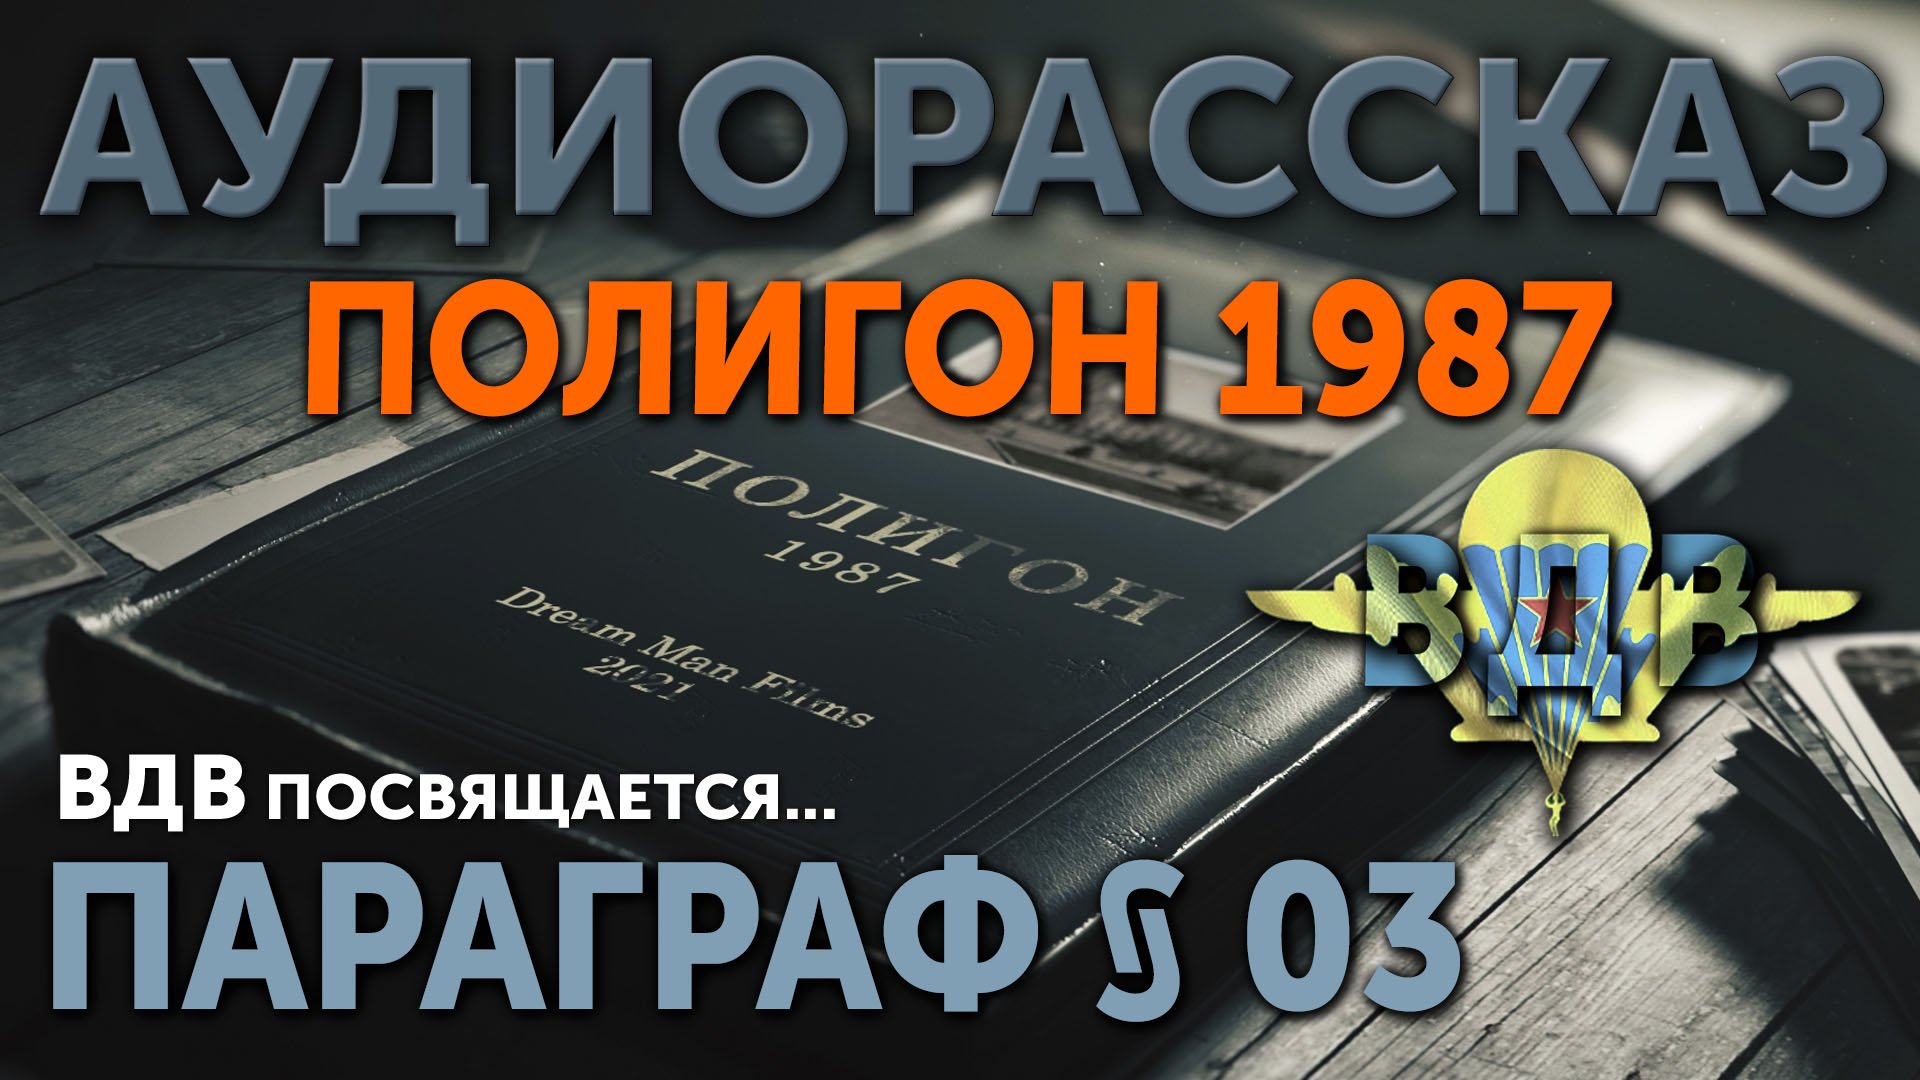 Аудиорассказ ПОЛИГОН 1987 Параграф 03 ВДВ посвящается.